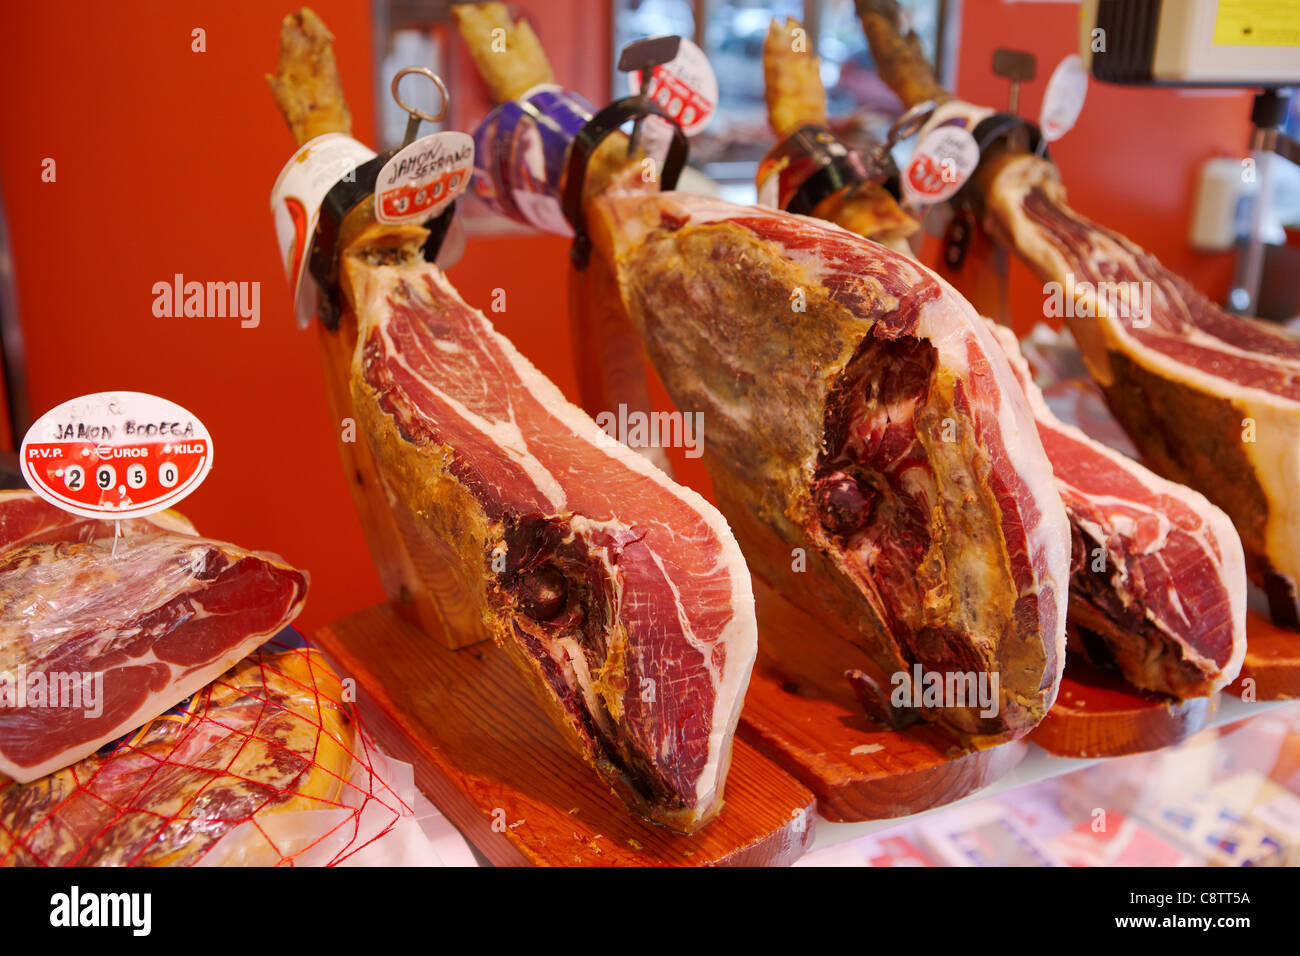 Jamon (Spanish ham) displayed in deli. Salou, Catalonia, Spain. Stock Photo